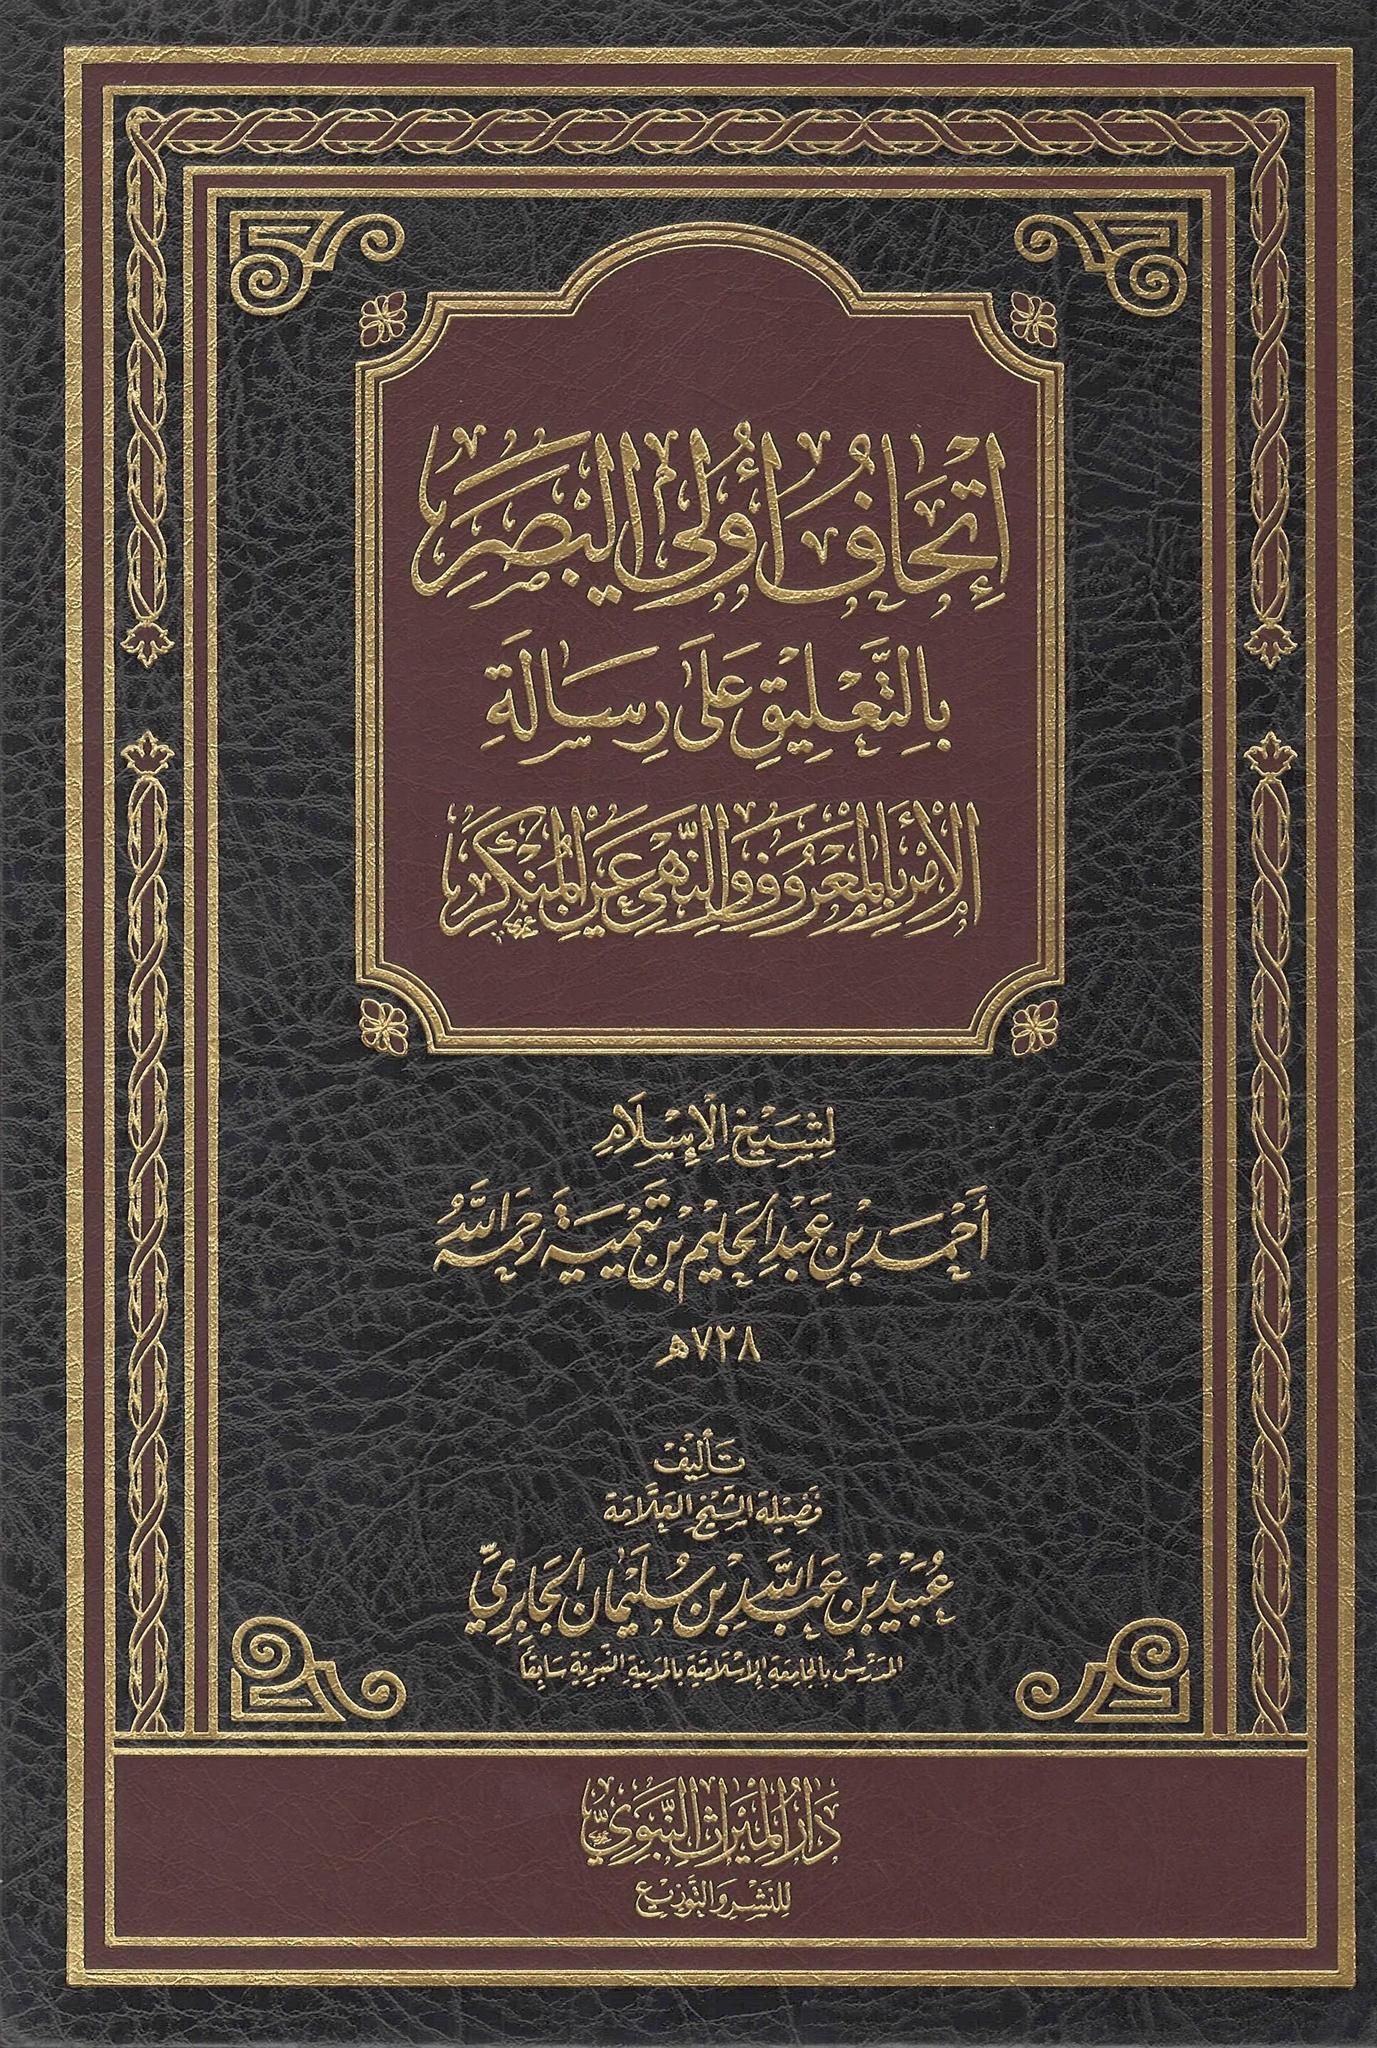 Ithaaf Uli Al-Basar Bi Al-Ta'liq 'Ala Risaalah Al-Amr Bi Al-Ma'ruf wa Al-Nahi 'An Al-Munkar